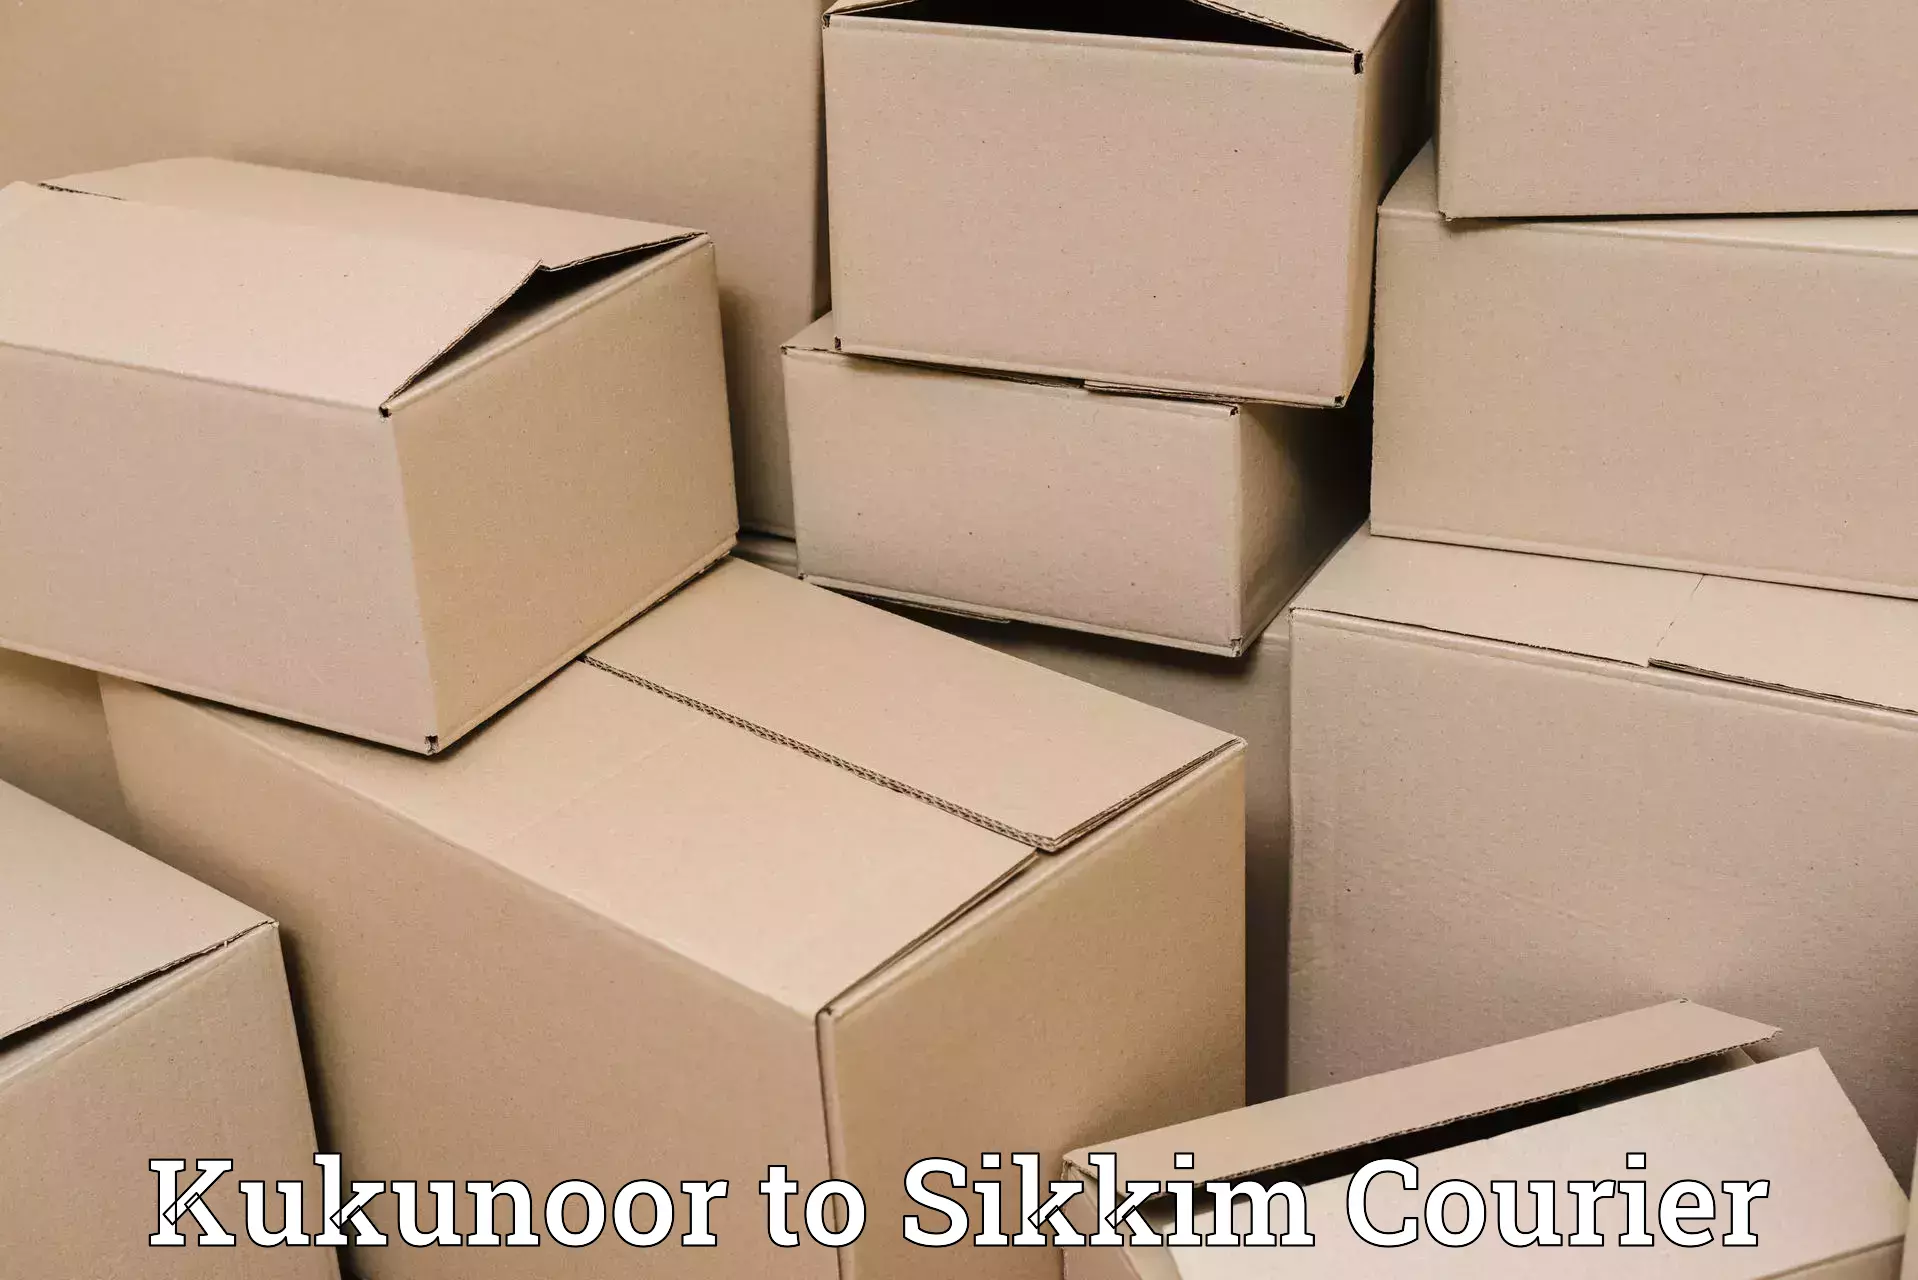 Premium courier services Kukunoor to Ranipool